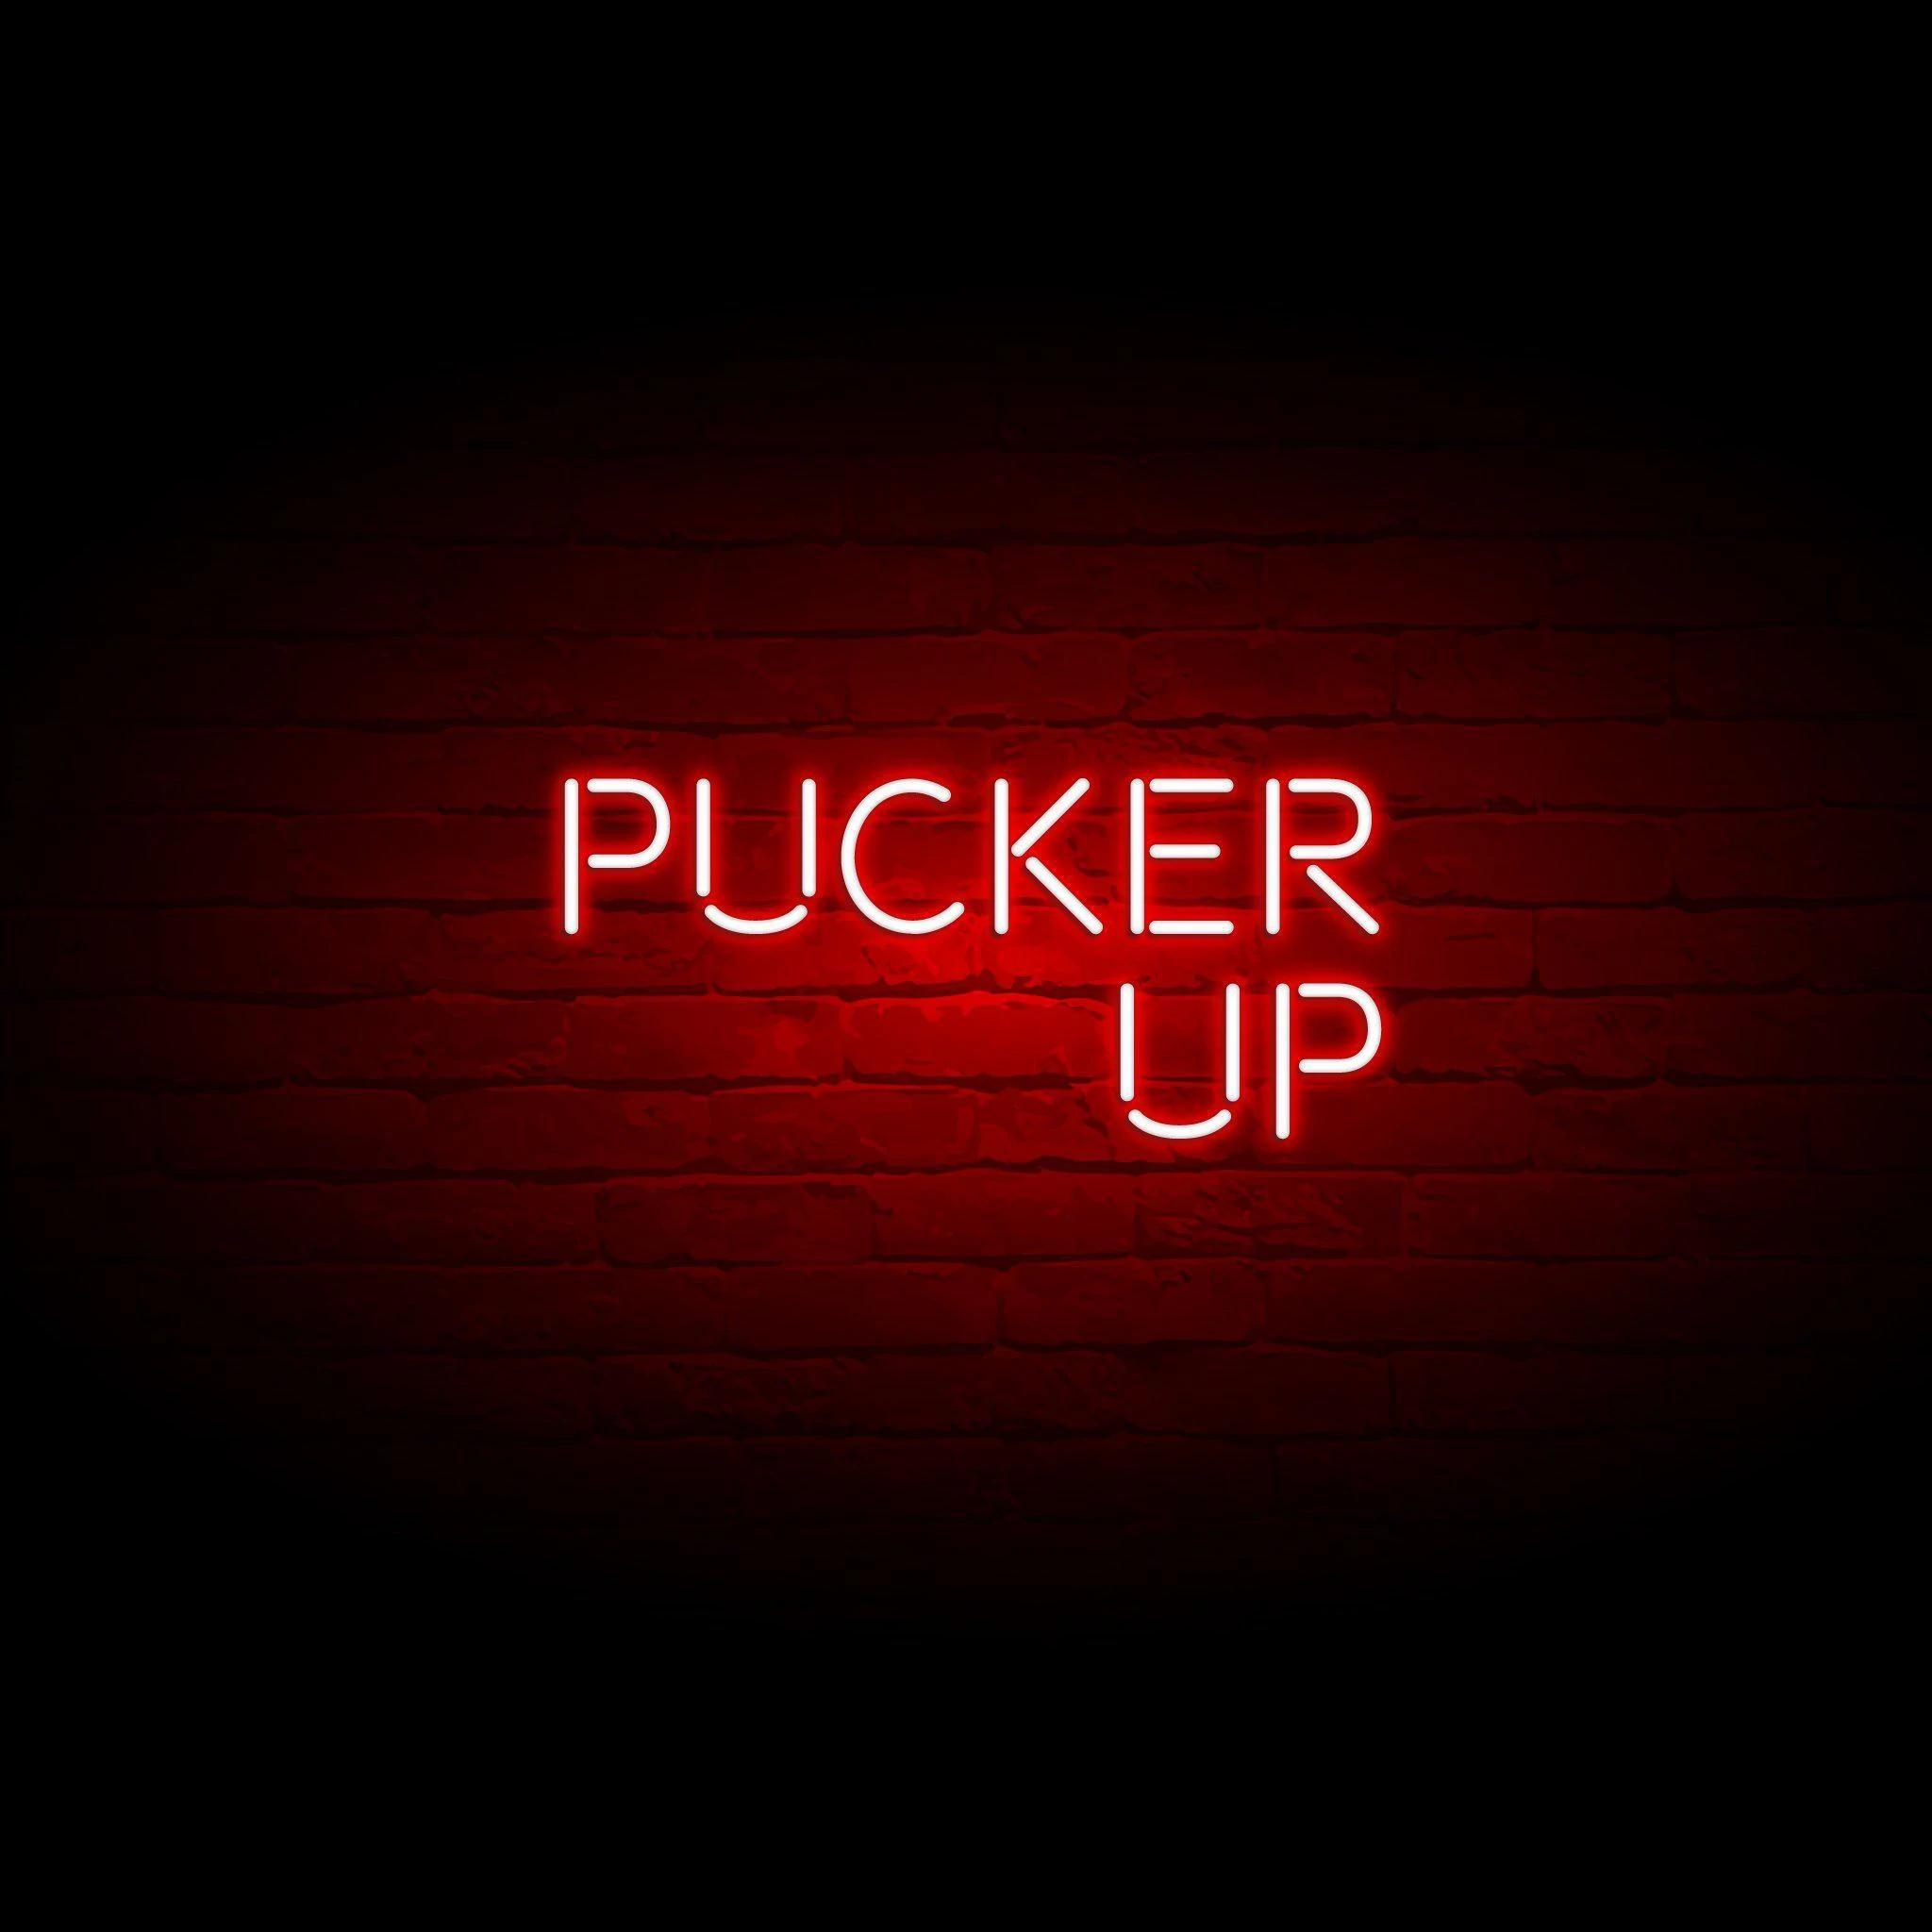 'PUCKER UP' NEON SIGN